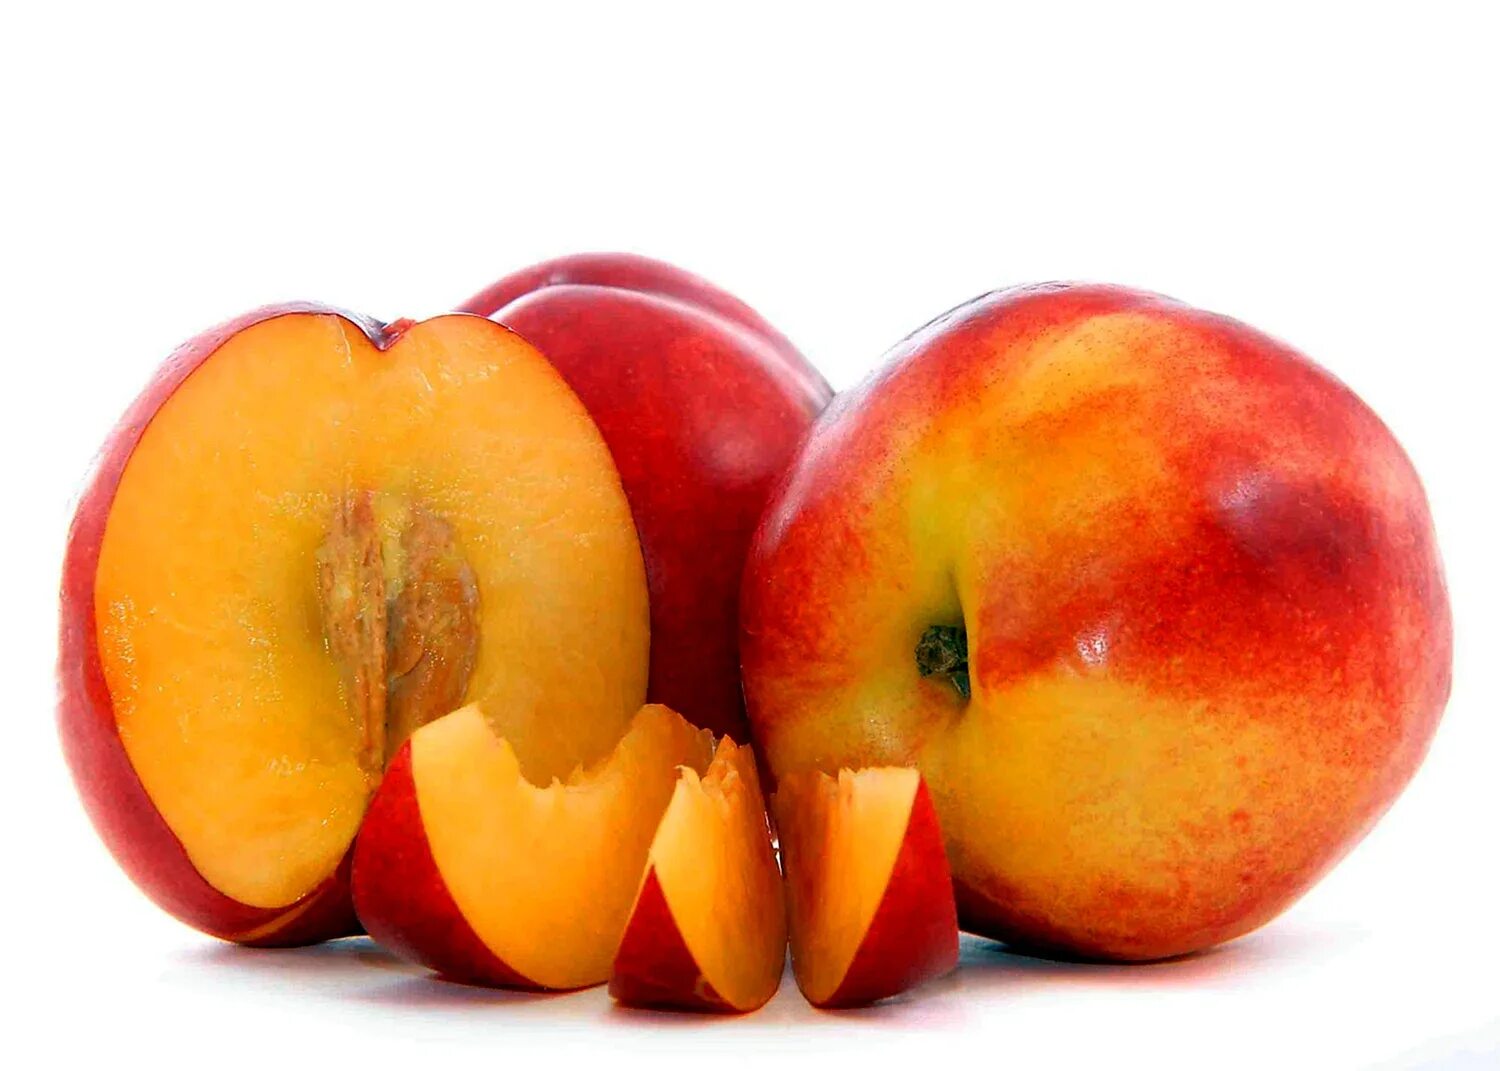 Персик, манго,абрикос,нектарин. Нектарин медовый беломясый. 2 10 всех фруктов составляют персики